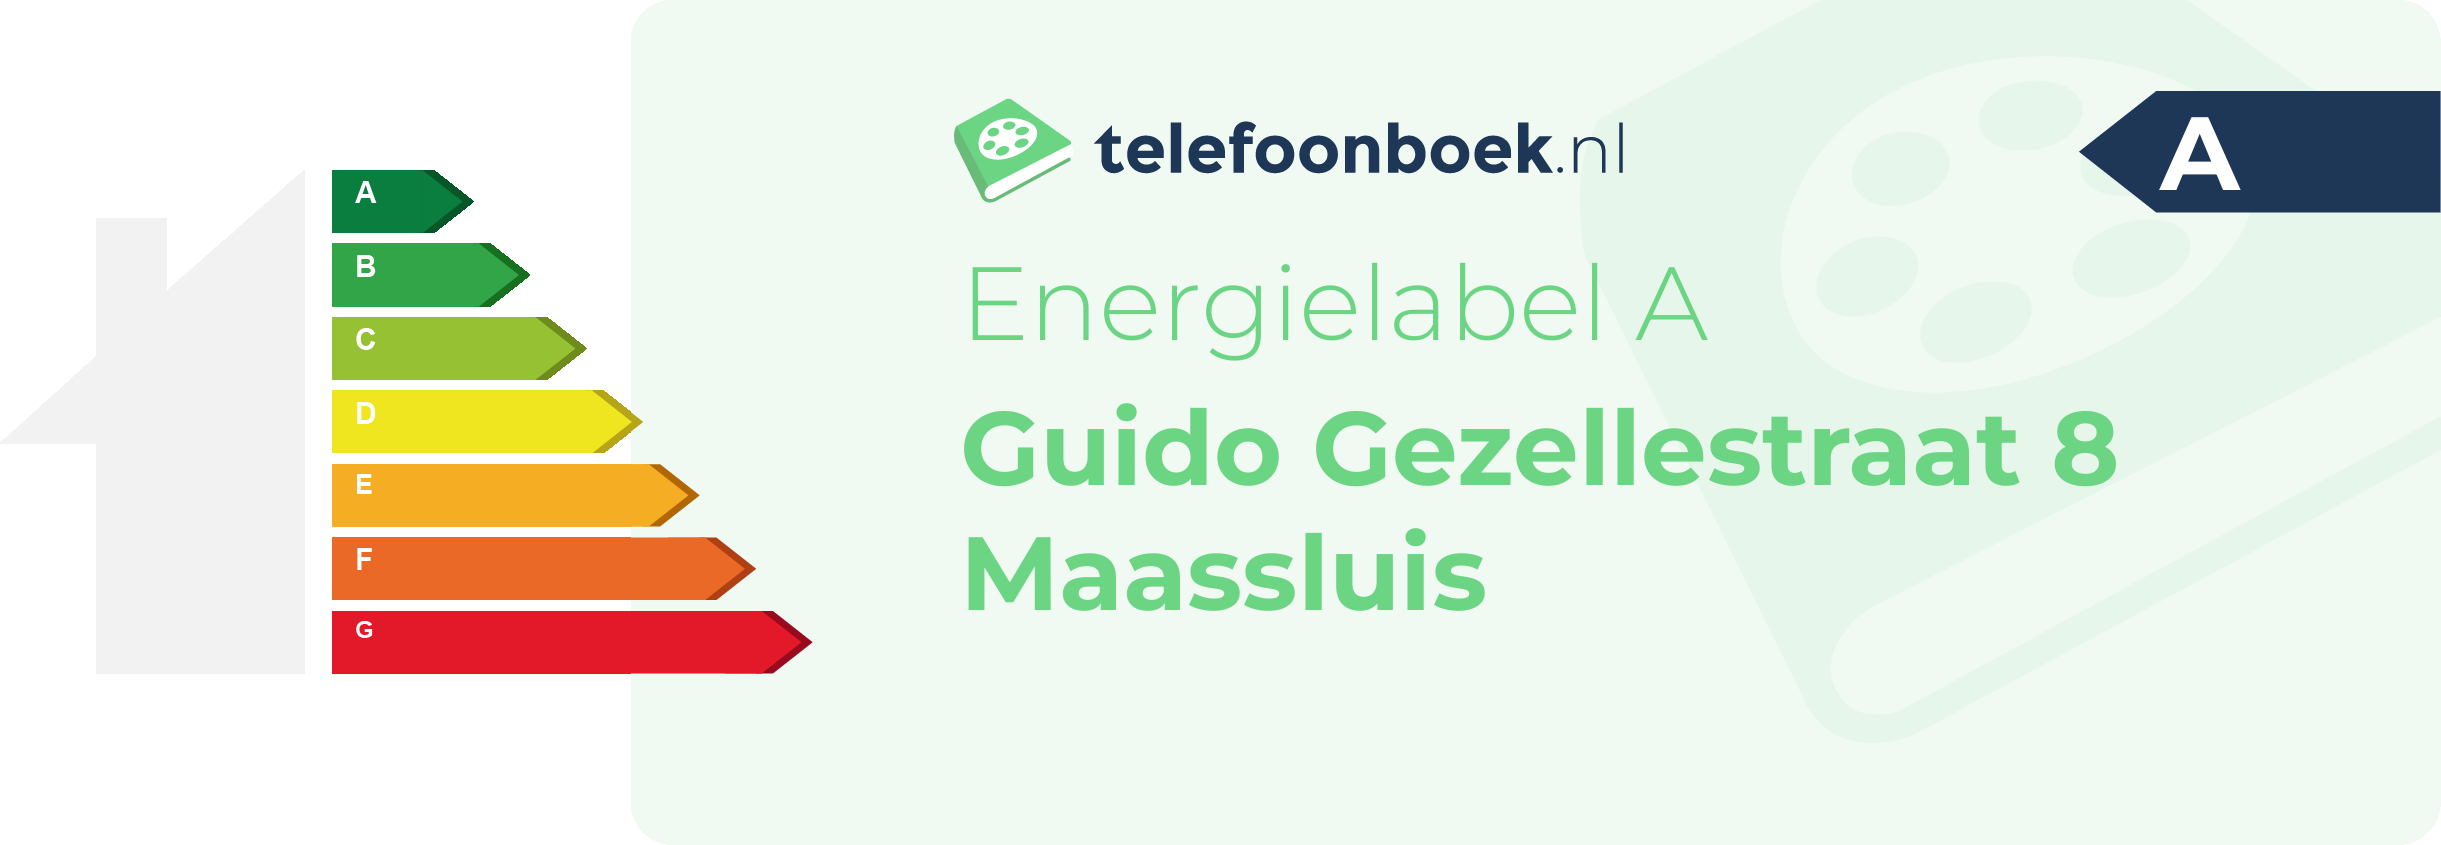 Energielabel Guido Gezellestraat 8 Maassluis